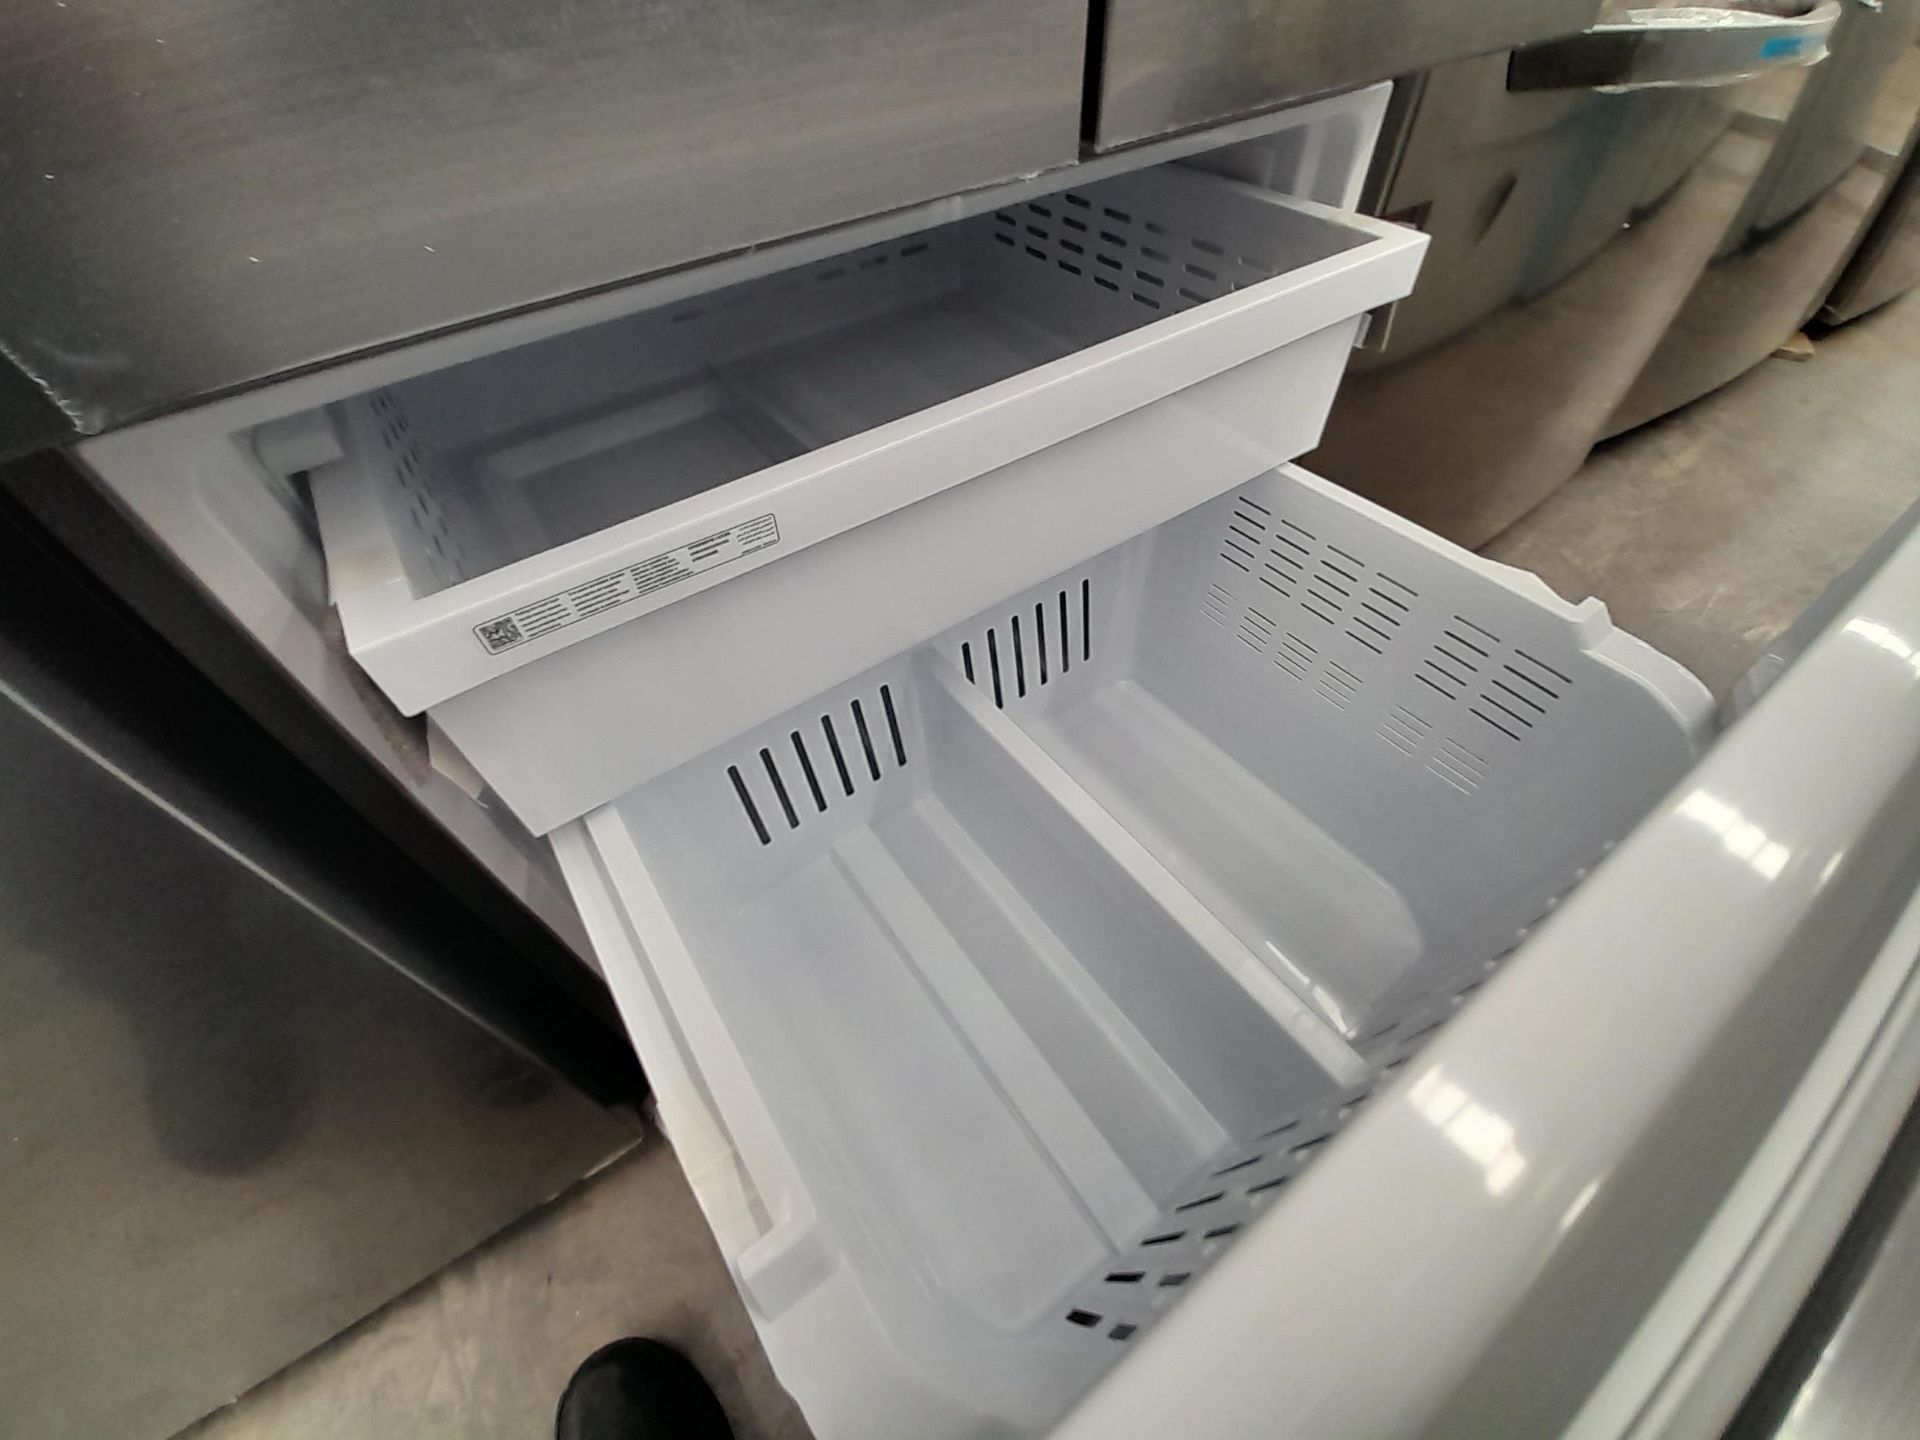 (Equipo nuevo) 1 Refrigerador Marca SAMSUNG, Modelo RF22A4010S9, Serie 00665B, Color GRIS. (Nuevo, - Image 5 of 5